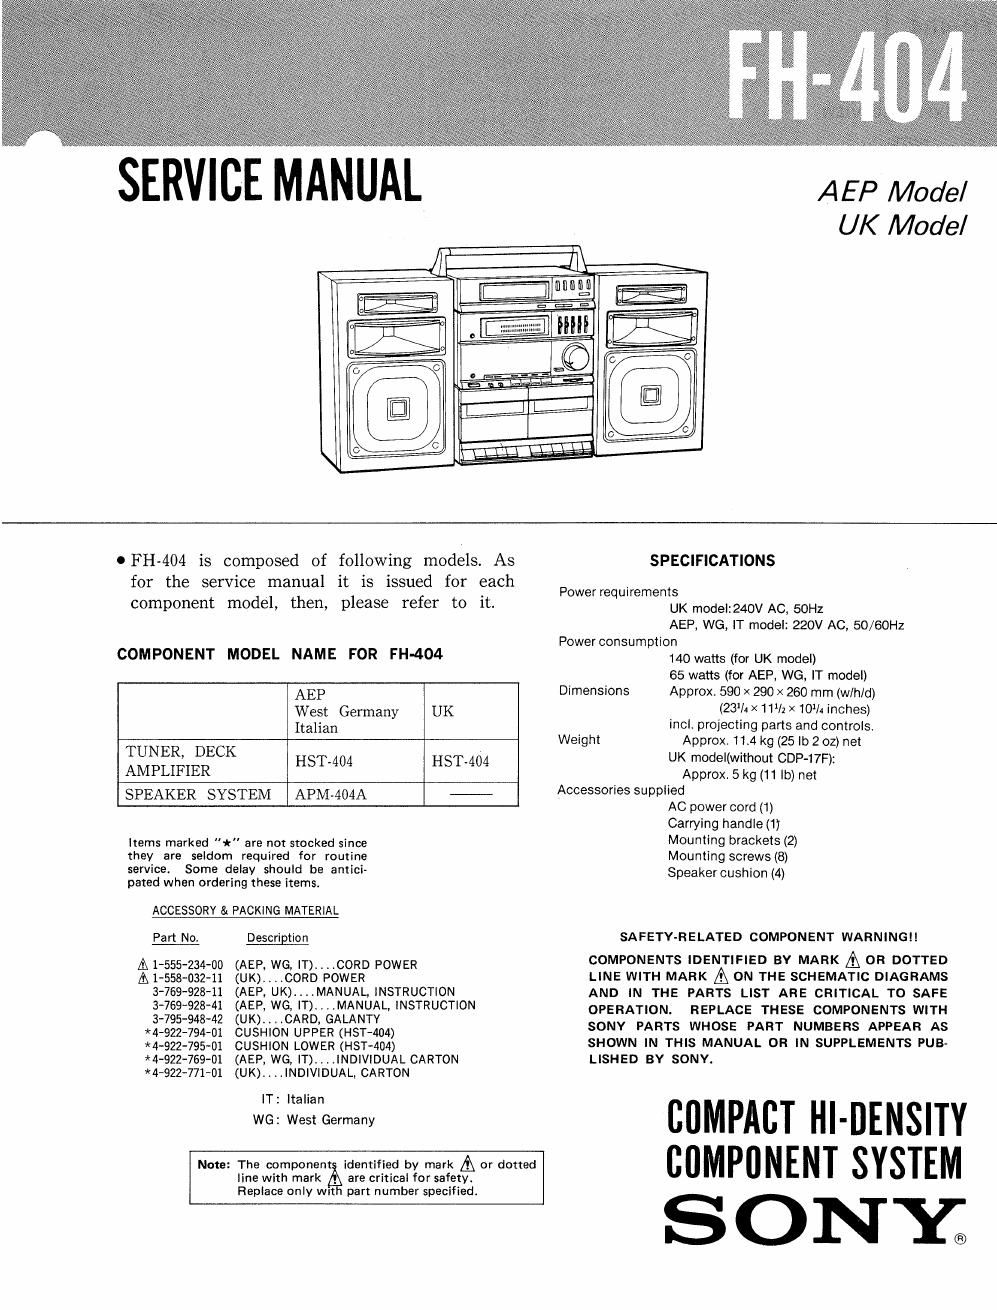 sony fh 404 service manual 2